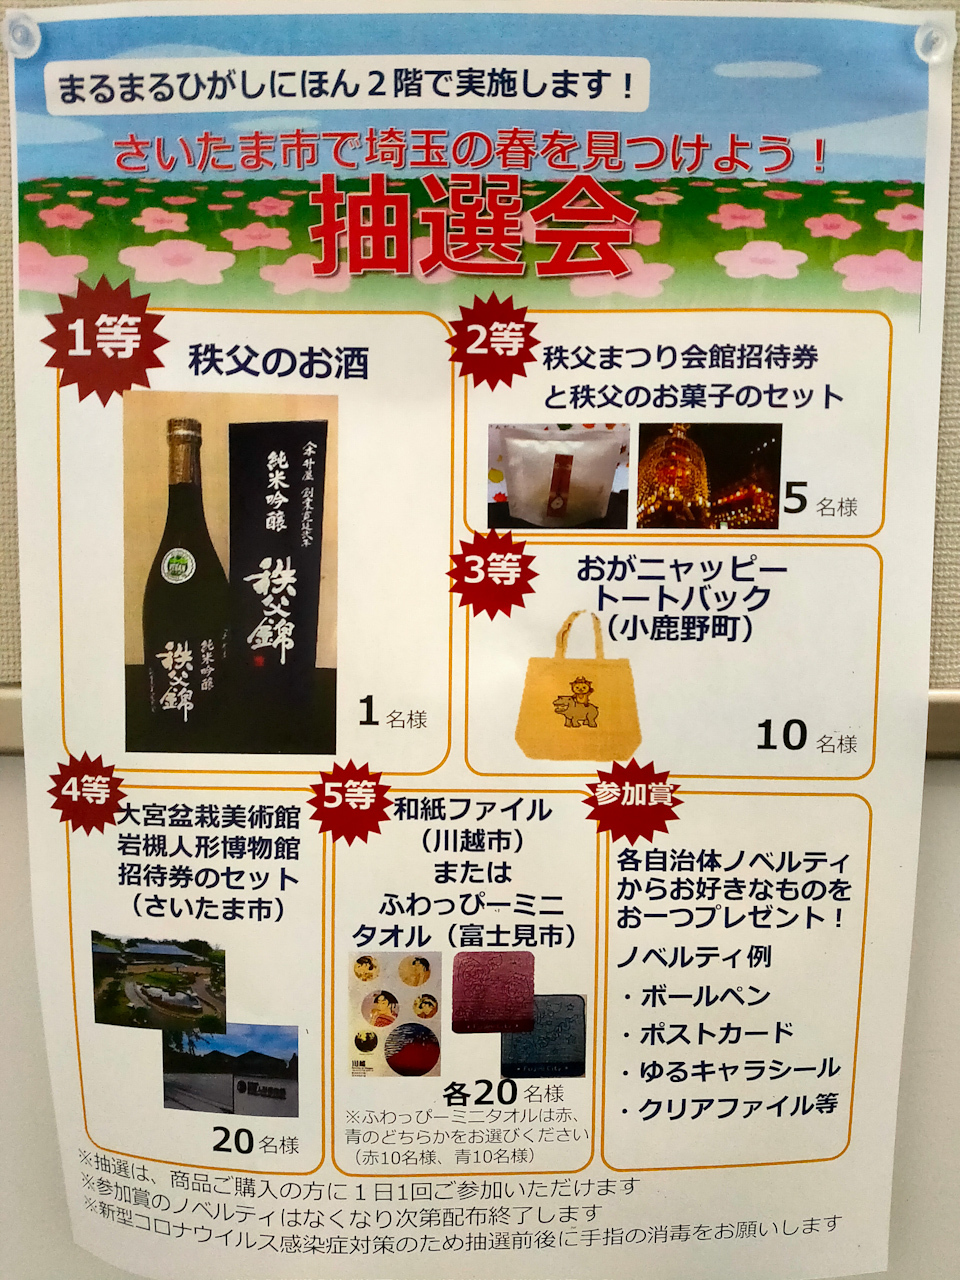 1階で買い物をすると埼玉県内の商品が当たる抽選会に参加可能